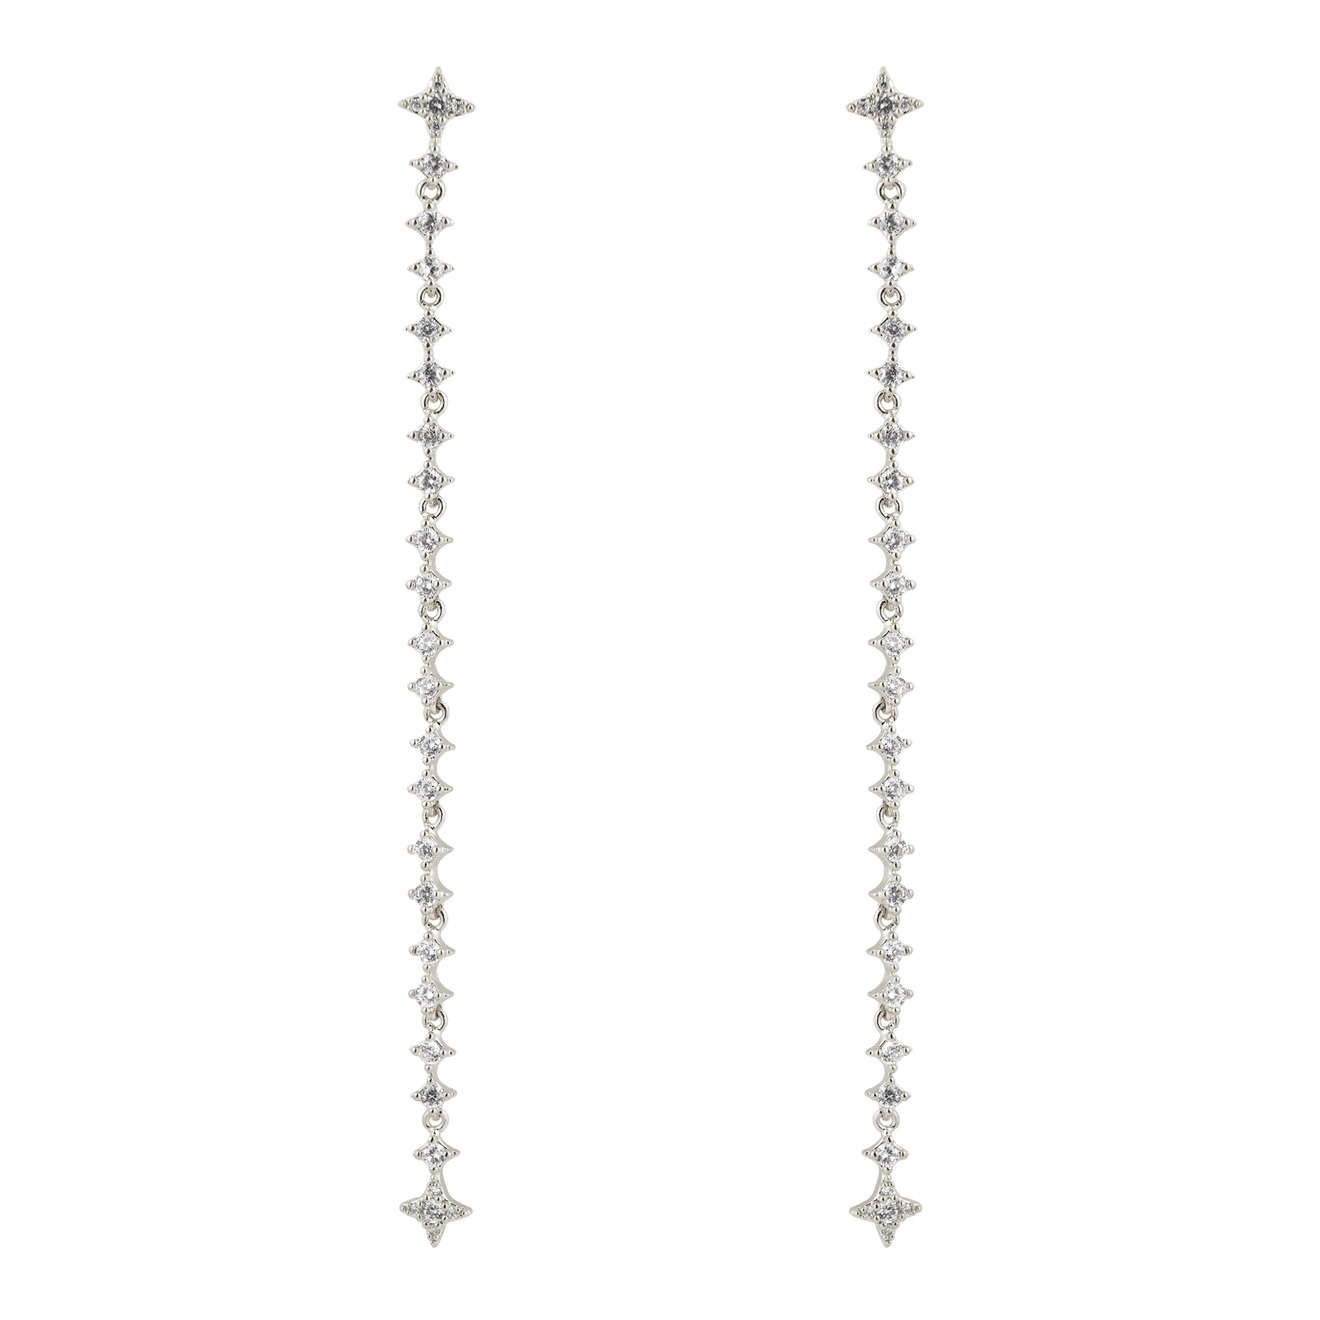 Free Form Jewelry Серебристые длинные серьги с кристаллами-звездами free form jewelry серьги серебристые двойные квадраты